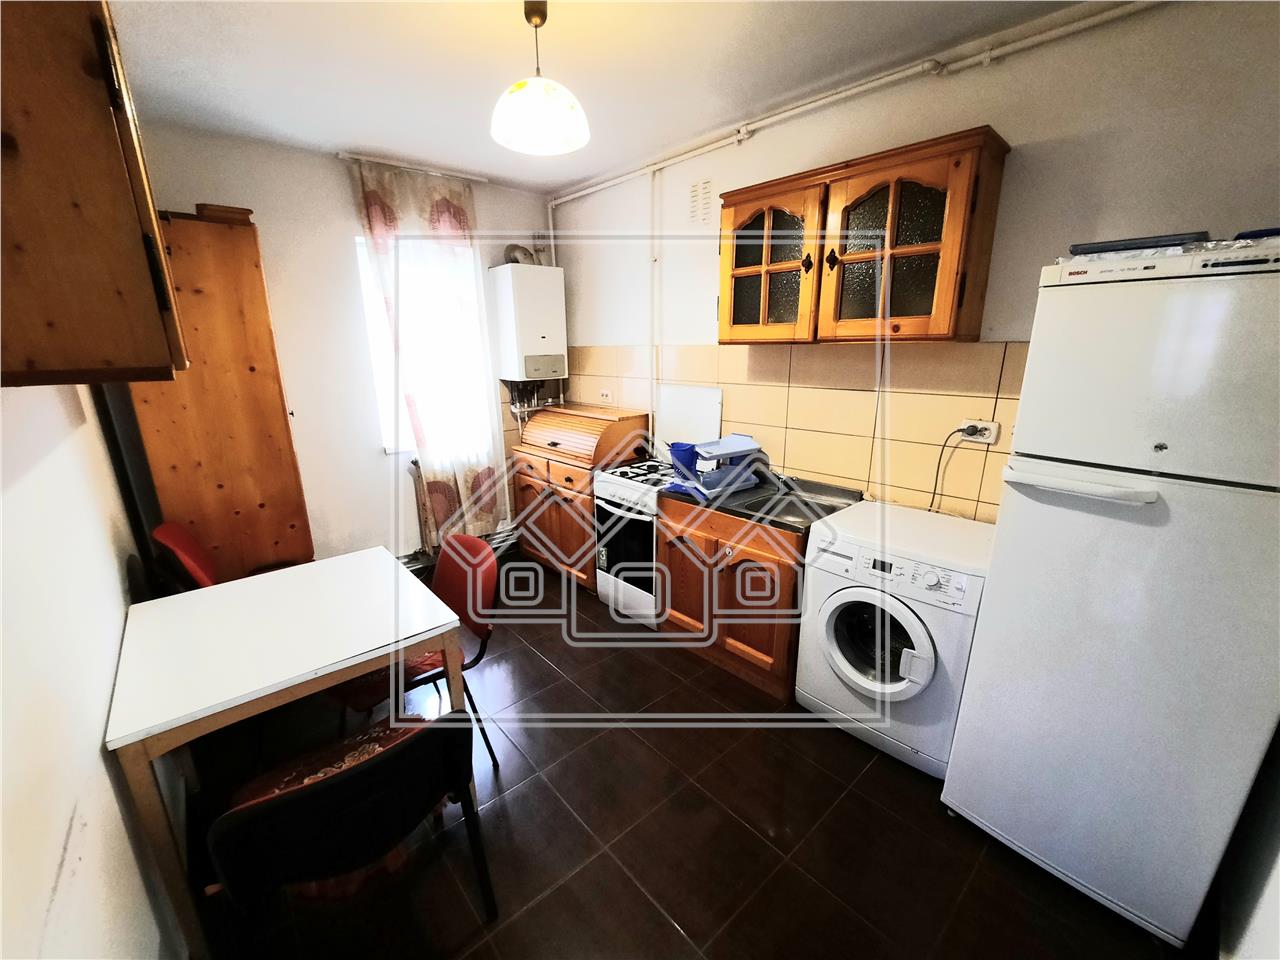 Apartment for rent in Alba Iulia - 3 rooms - Central area